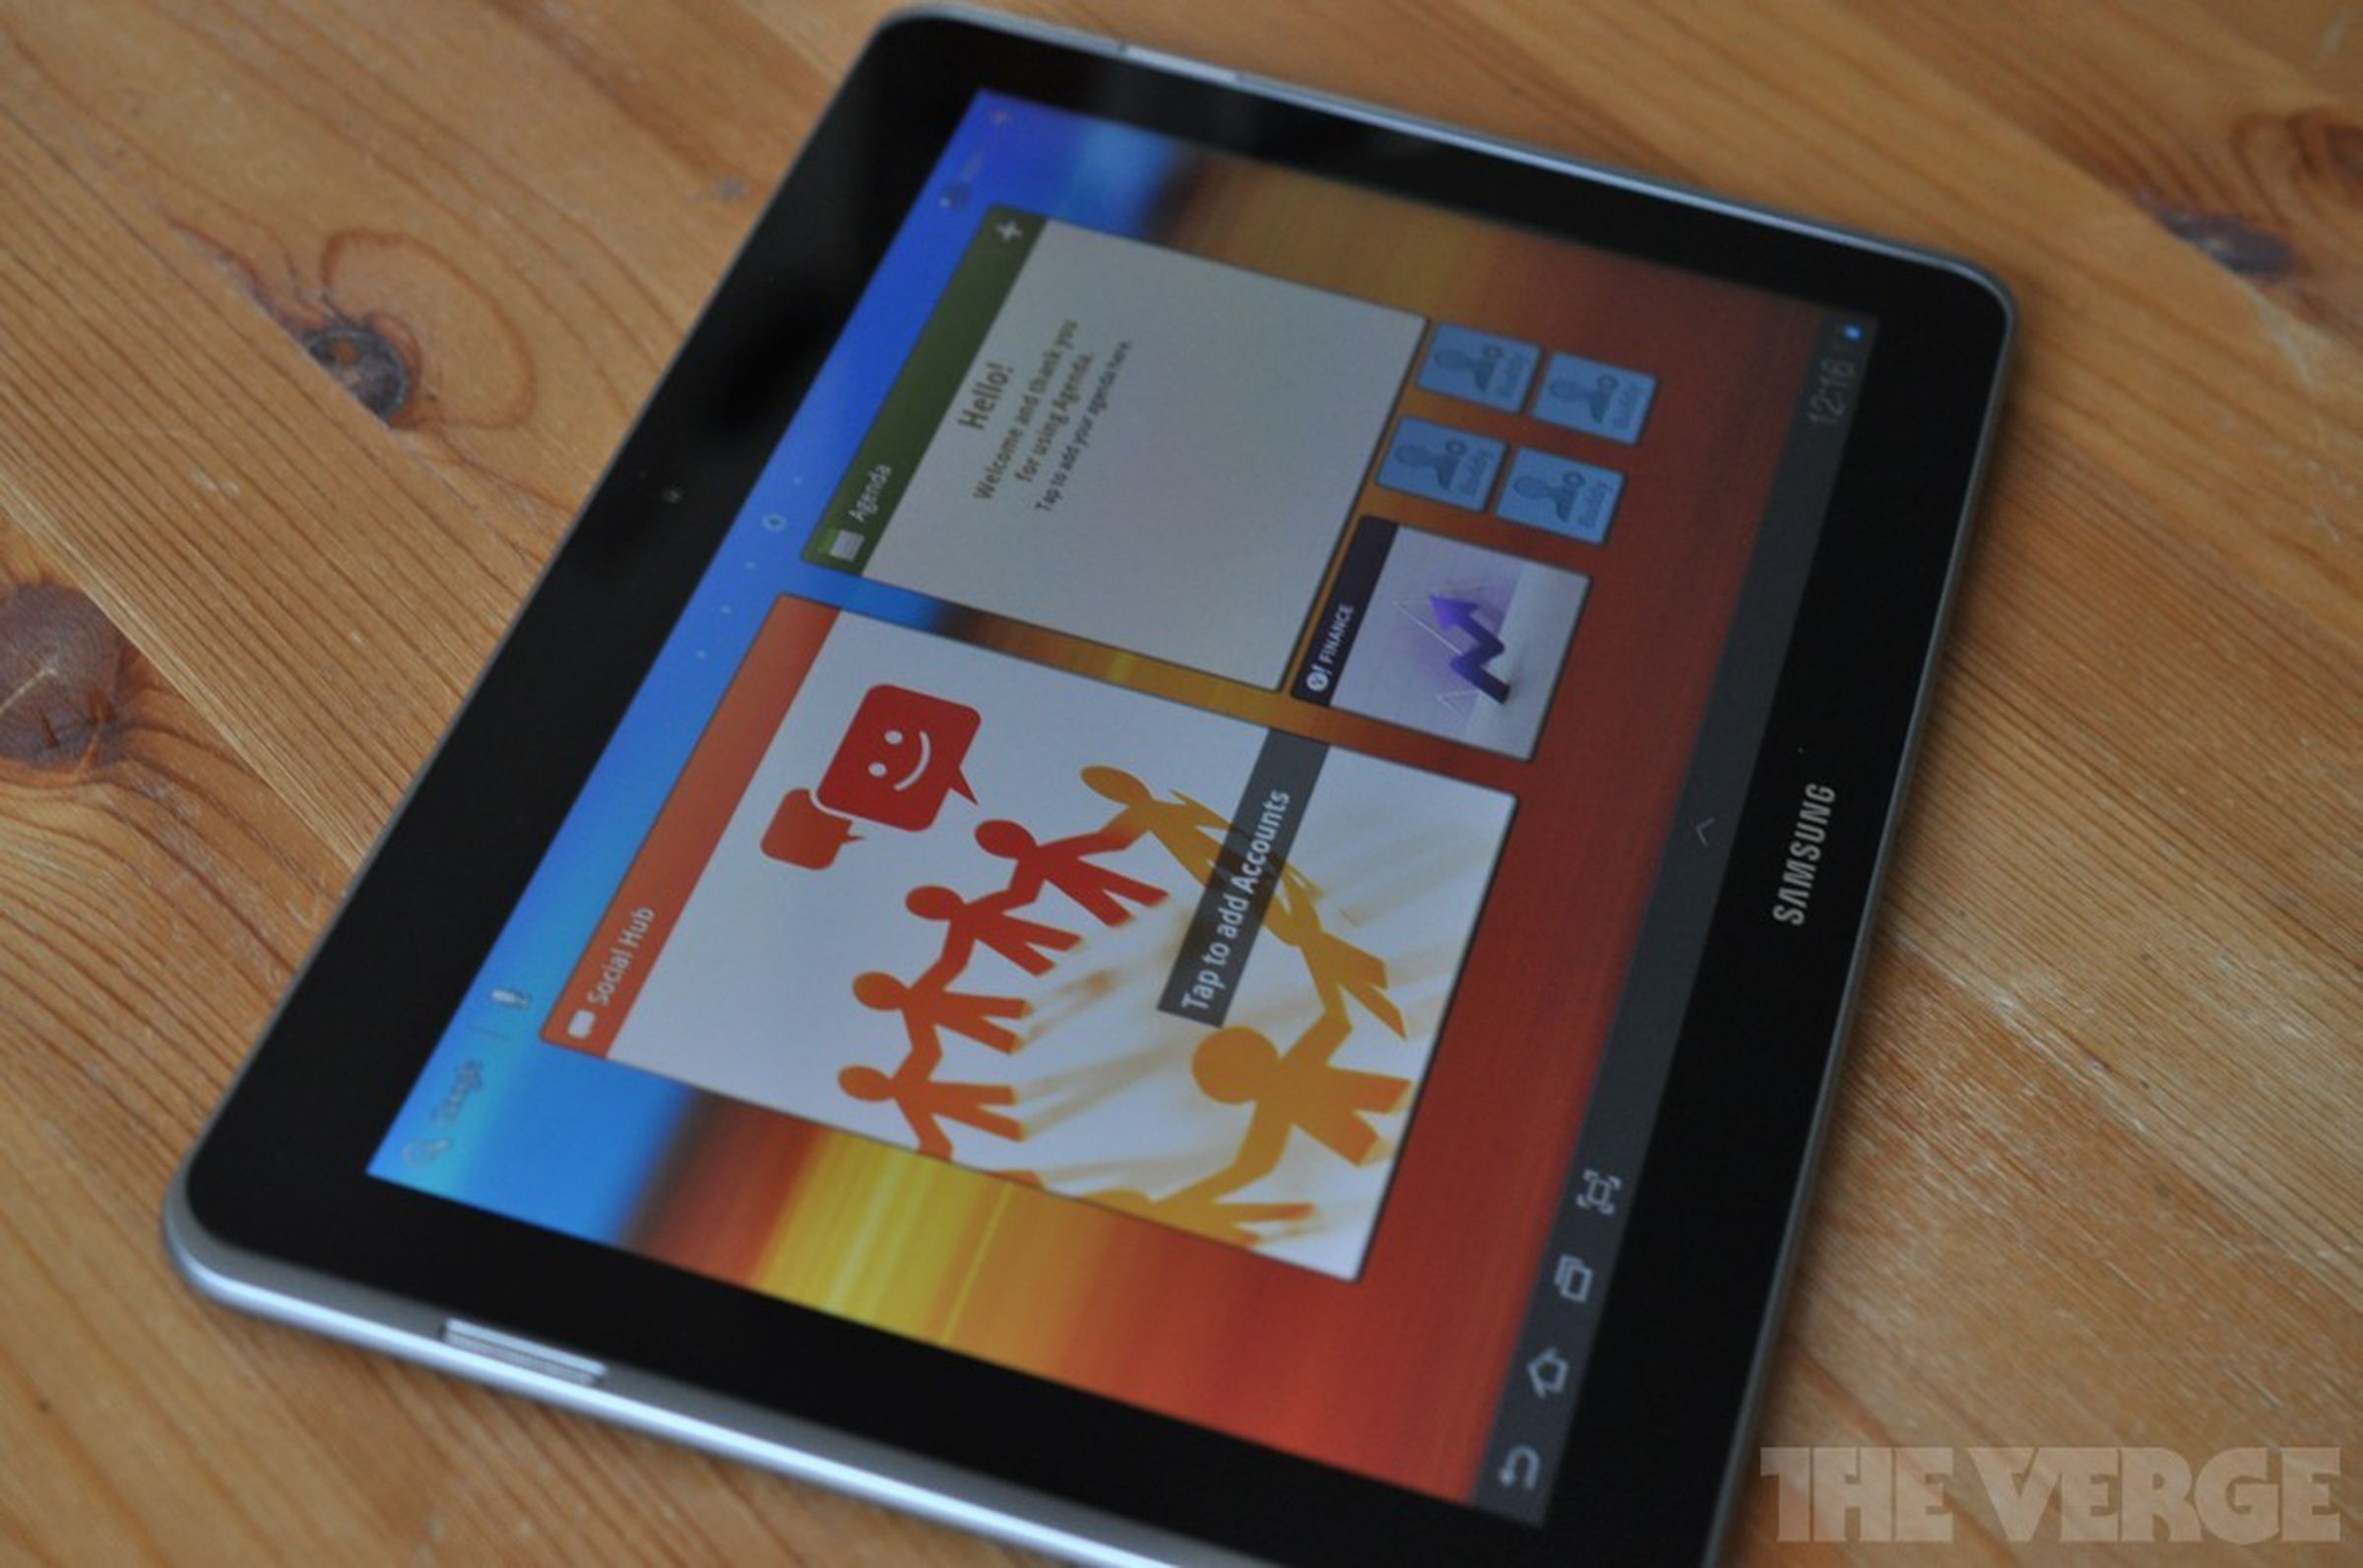 Samsung Galaxy Tab 10.1N hands-on gallery